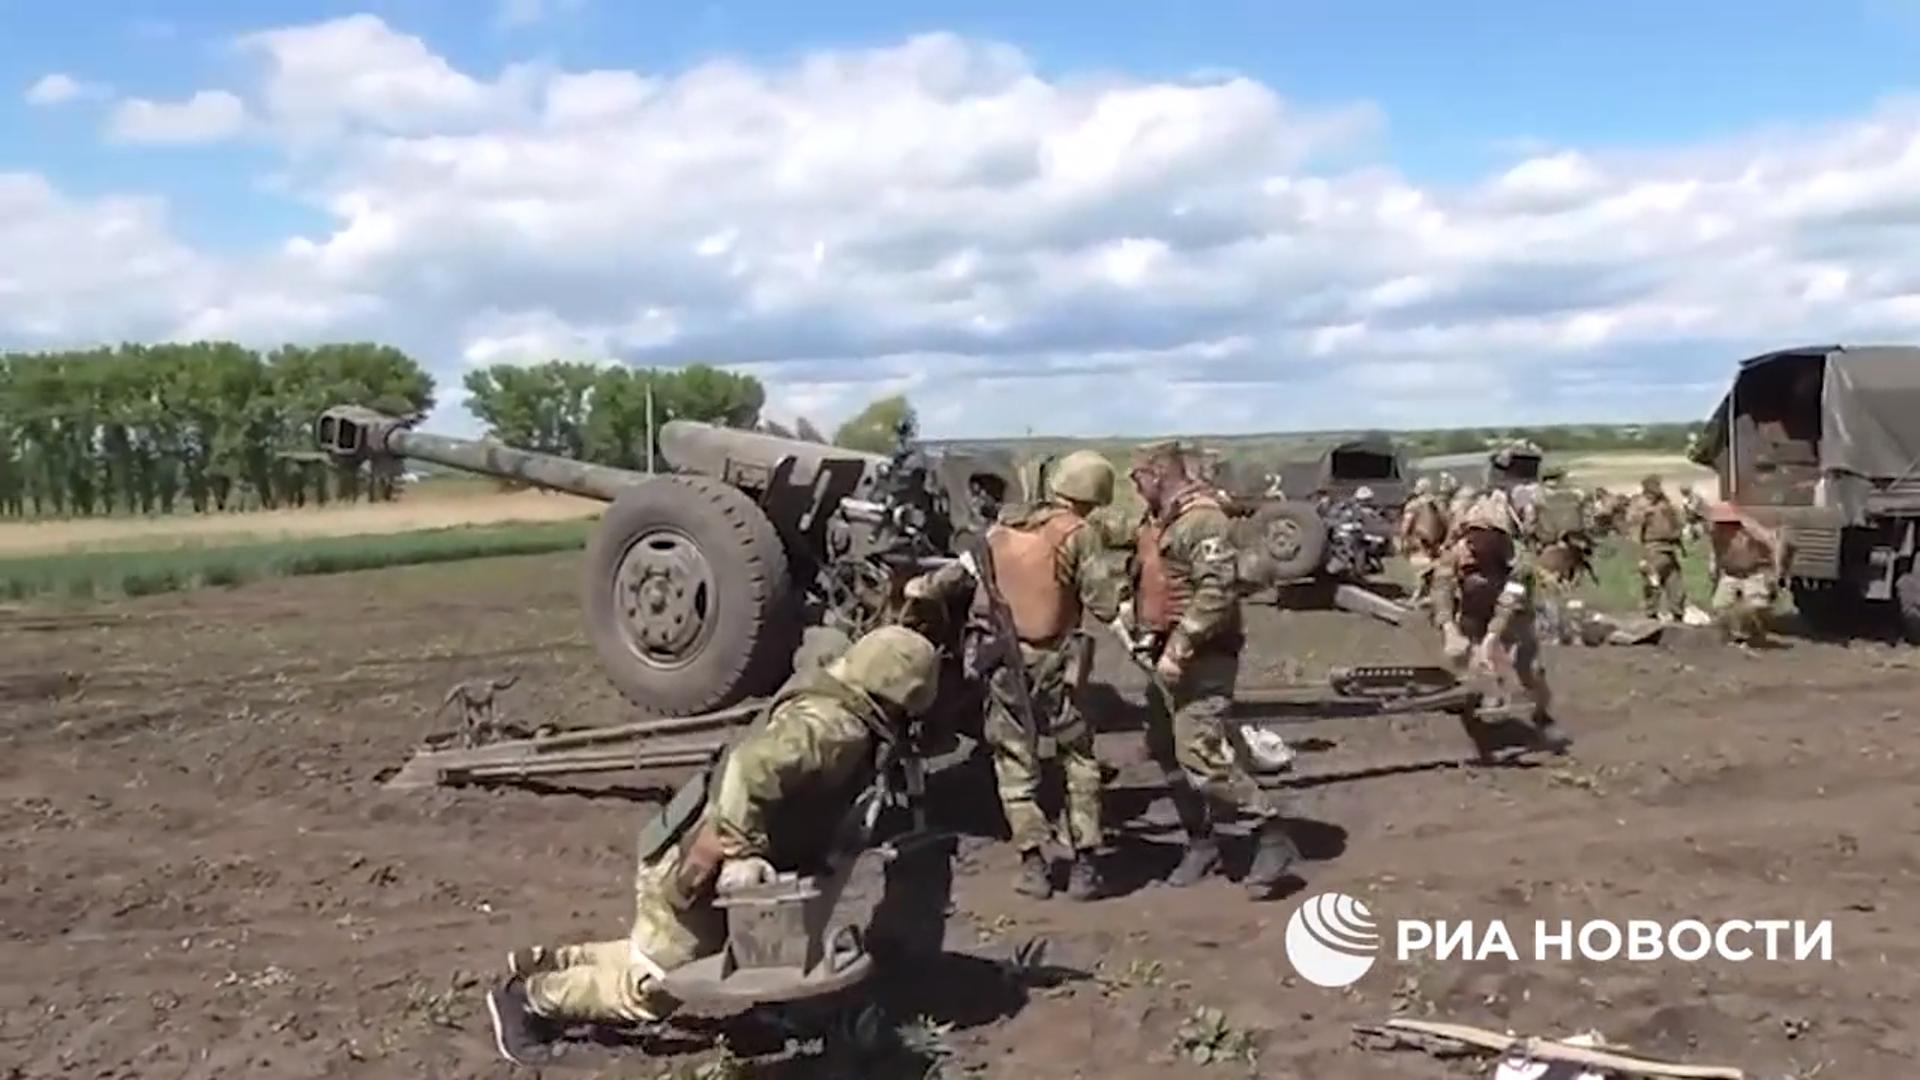 Żołnierze ładują pociski do armaty